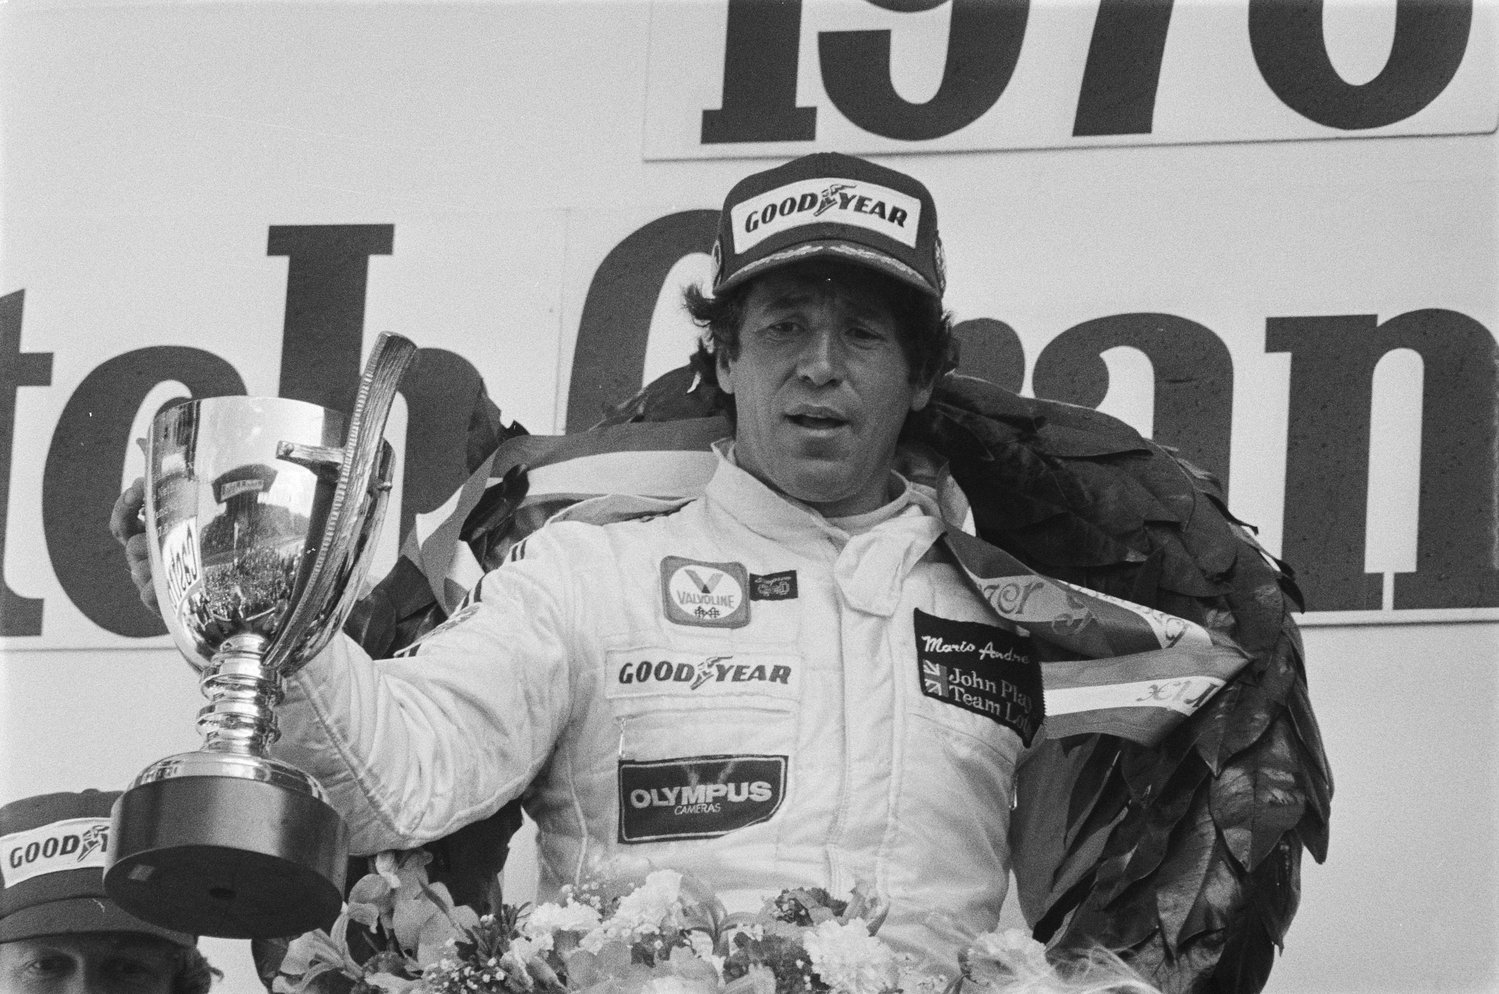 download mario andretti 1978 formula one car